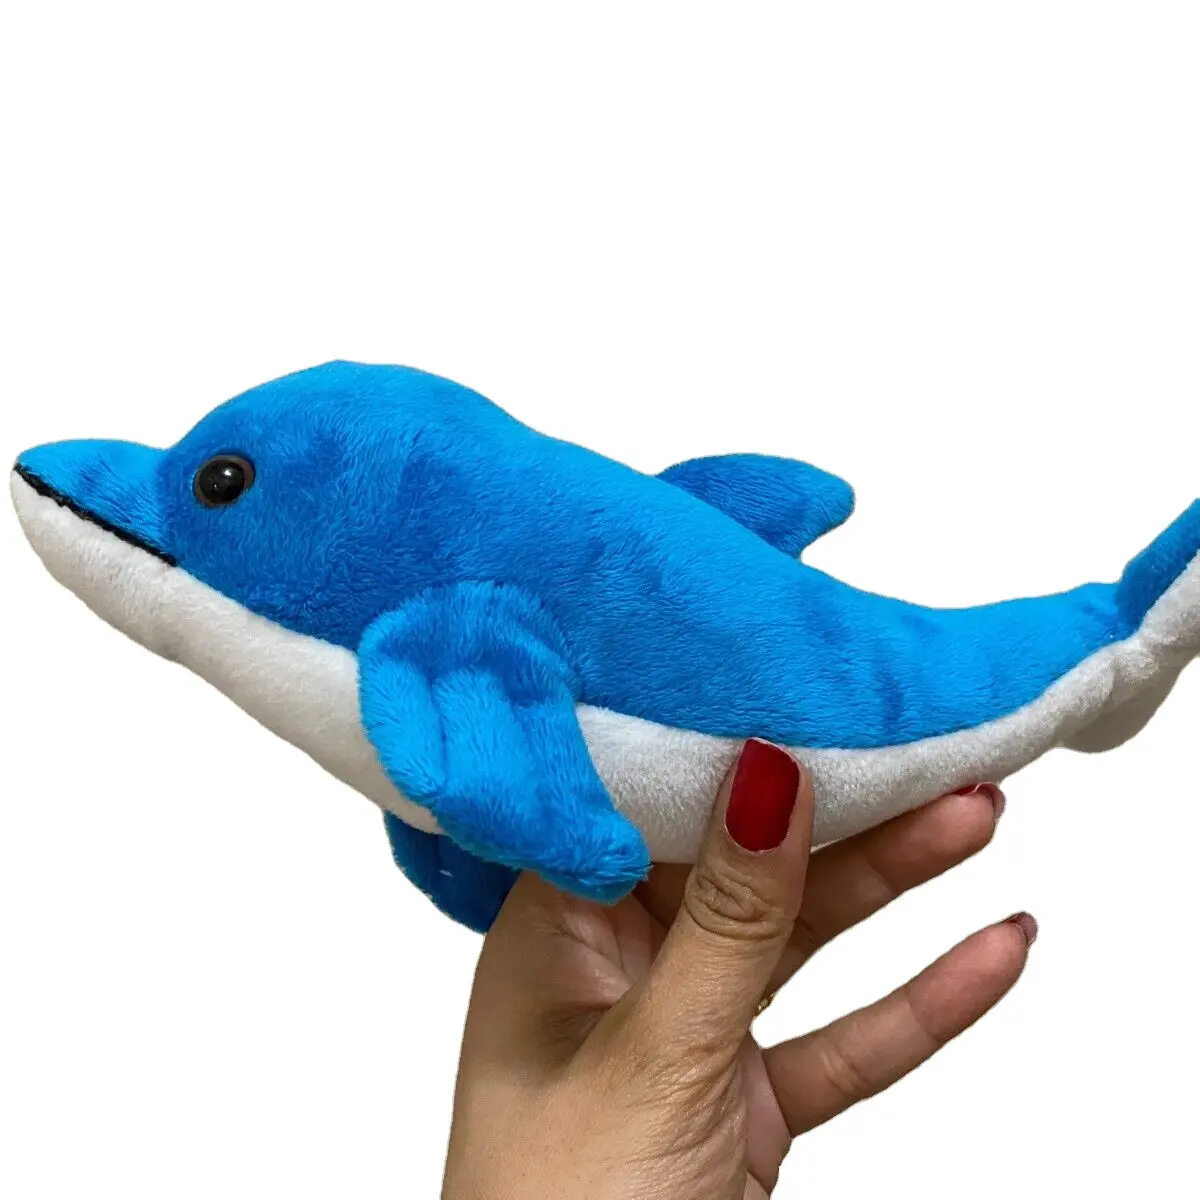 Nuevos juguetes personalizados de peluche suave de ballena azul por debajo de 1 dólar